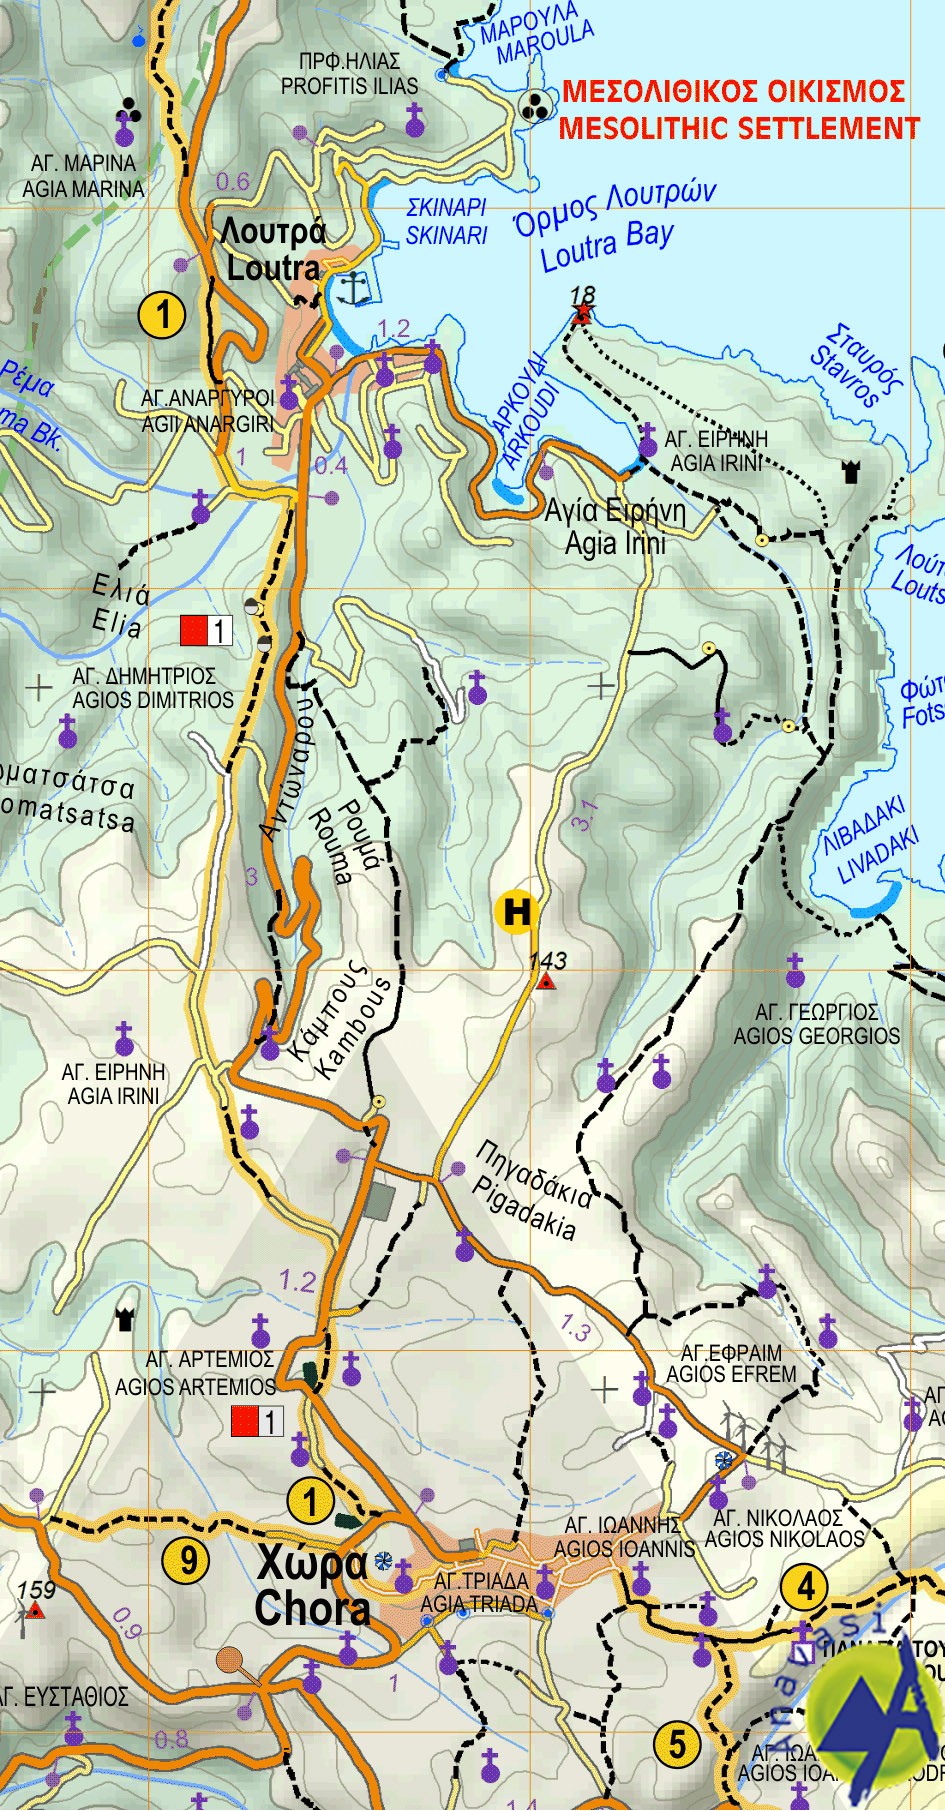 Kythnos • Hiking map 1:31.000